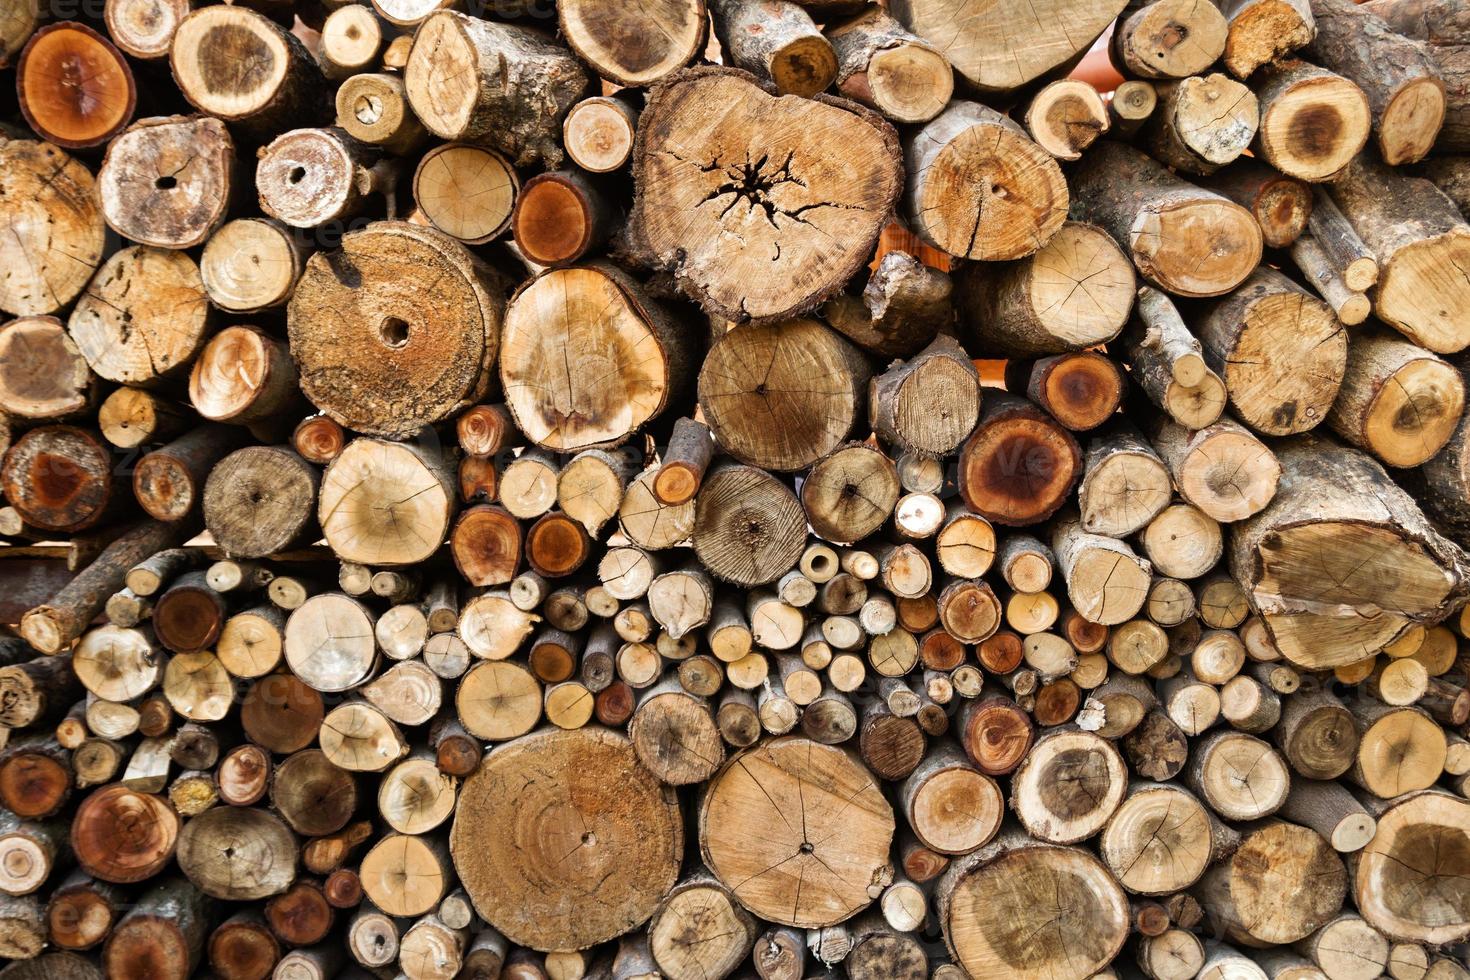 pared de troncos de leña picados secos apilados uno encima del otro en una pila. fondo de madera con textura. foto